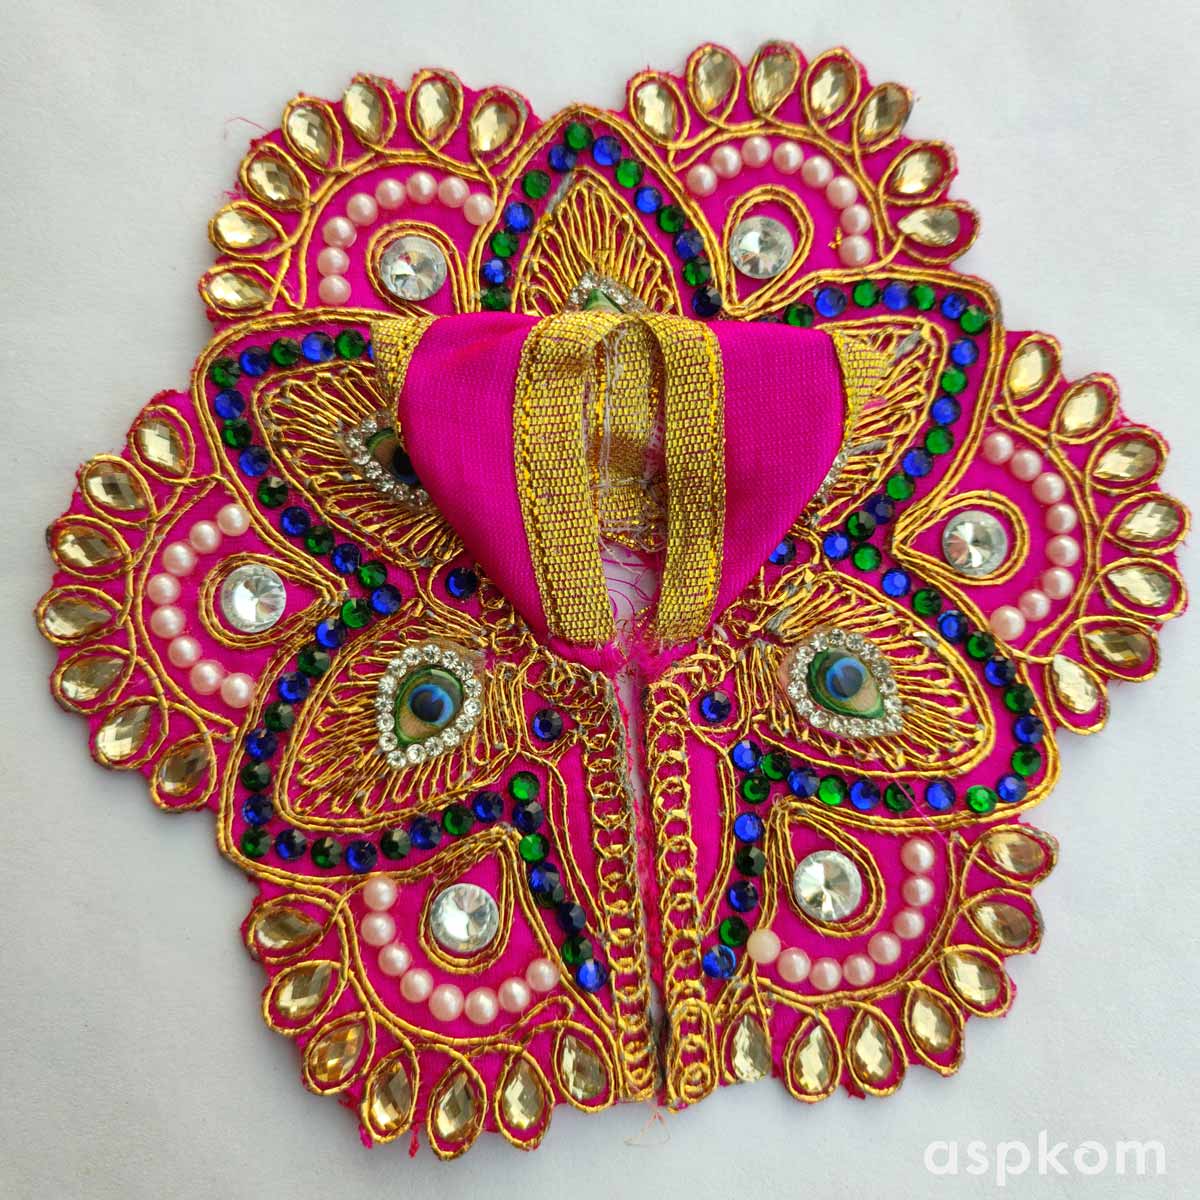 Share 125+ laddu gopal dress new design best